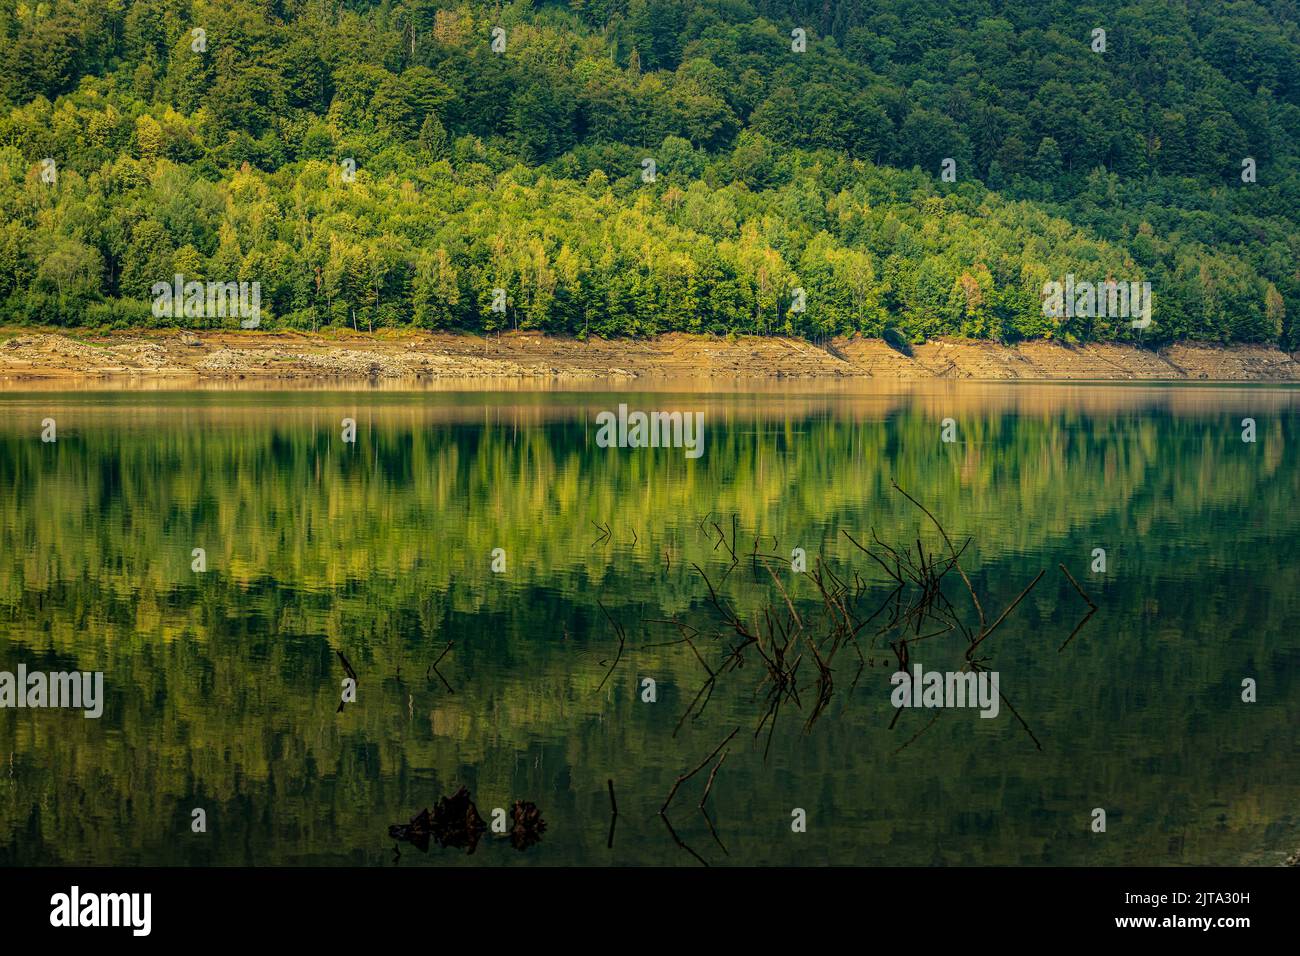 La riva del lago Poiana Marului si riflette in una simmetria durante l'estate. Photo taken on 31st of July 2022 in Poiana Marului reservation, Caras-Severin Cou Foto Stock